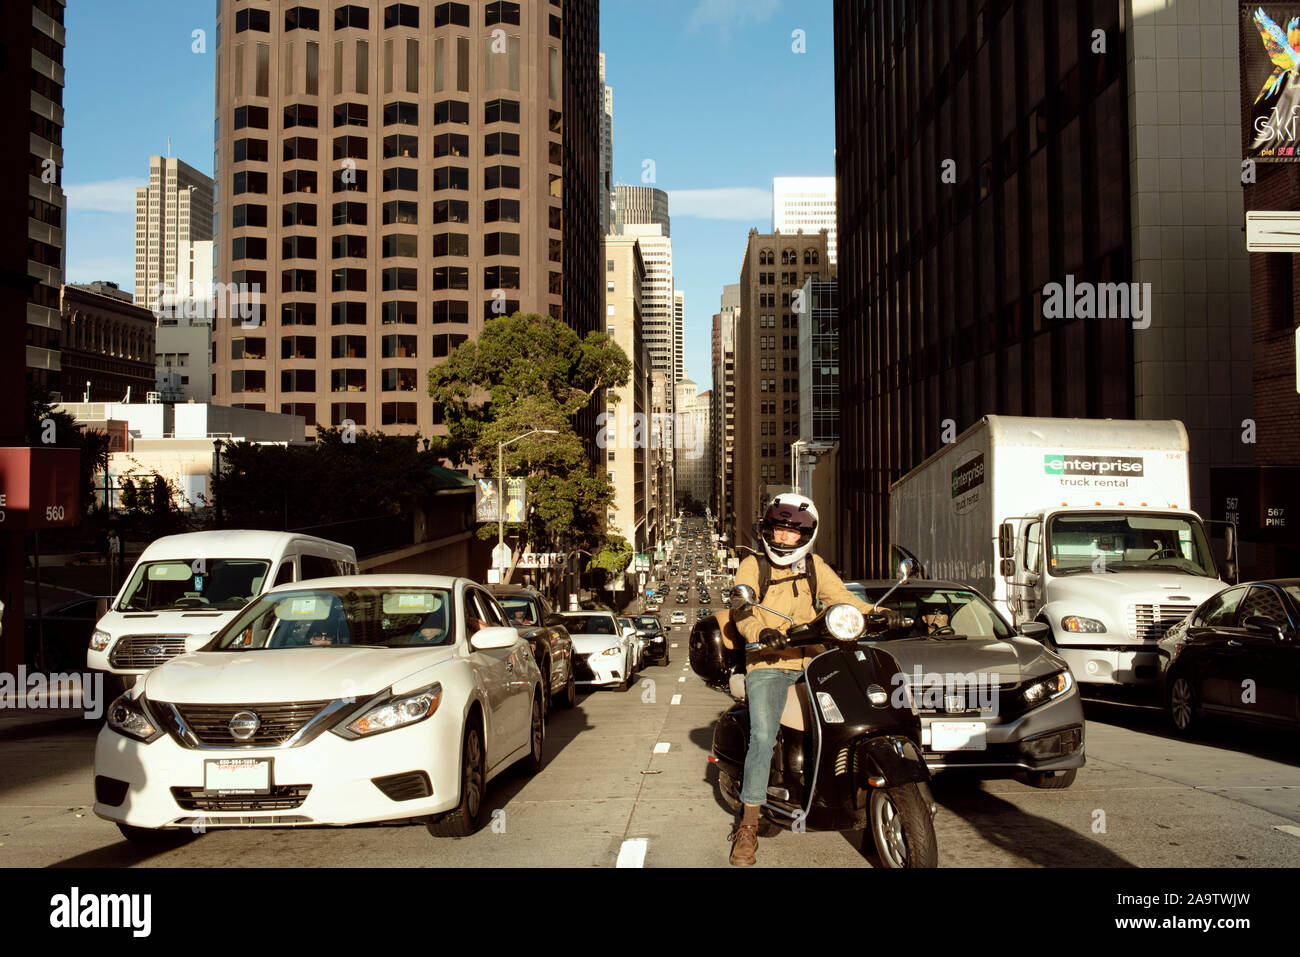 Scena di strada con il traffico intenso; i veicoli in attesa a luci rosse su Pine St, il centro cittadino di San Francisco, California, Stati Uniti d'America. Sep 2019 Foto Stock